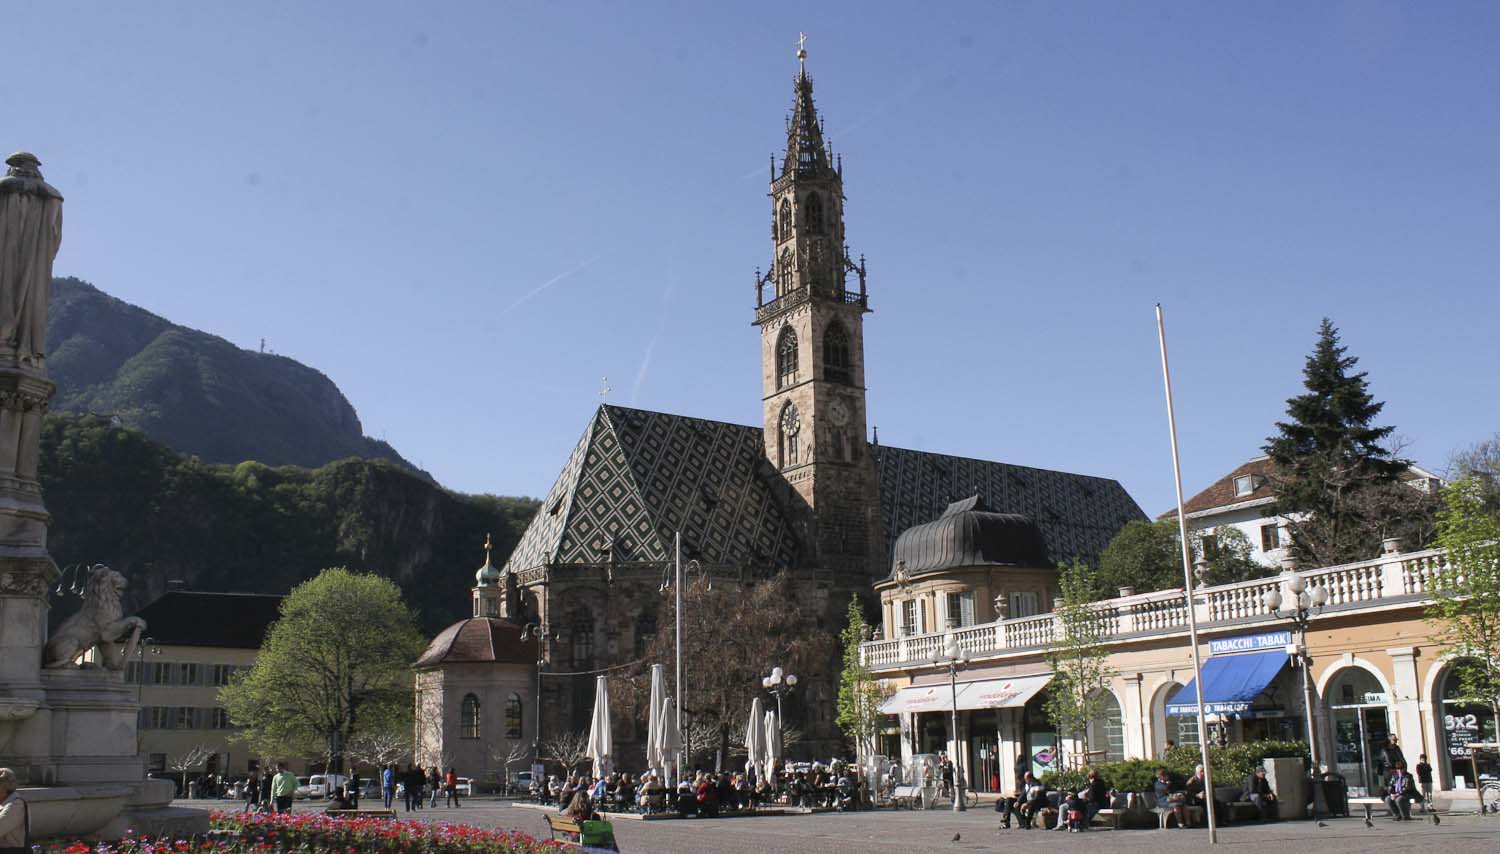 Cathedral of Bolzano - Italian Notes